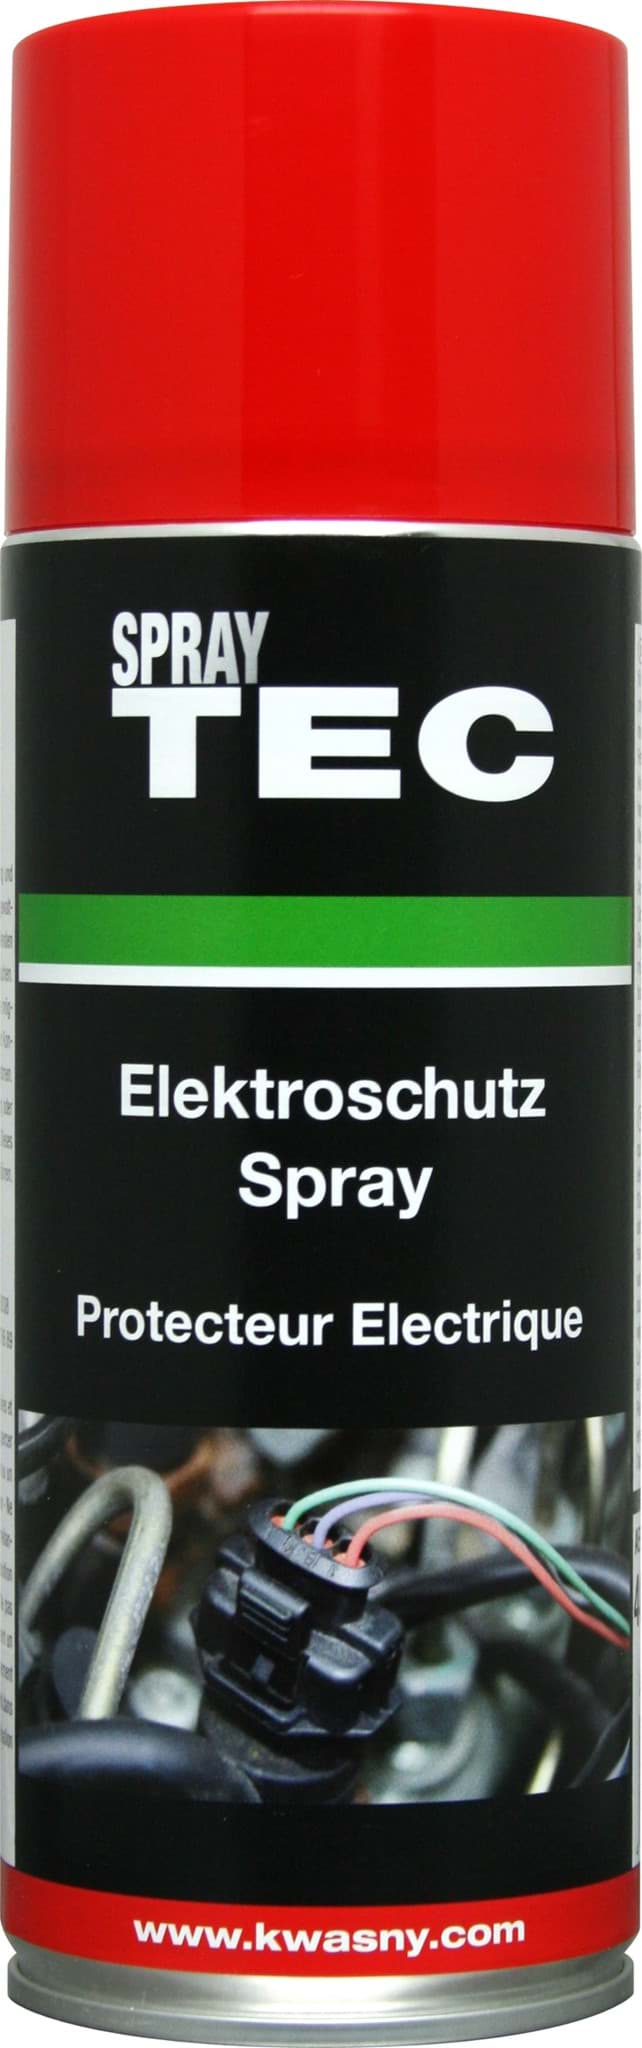 Elektroschutz-Spray 400ml SprayTEC 235003 resmi